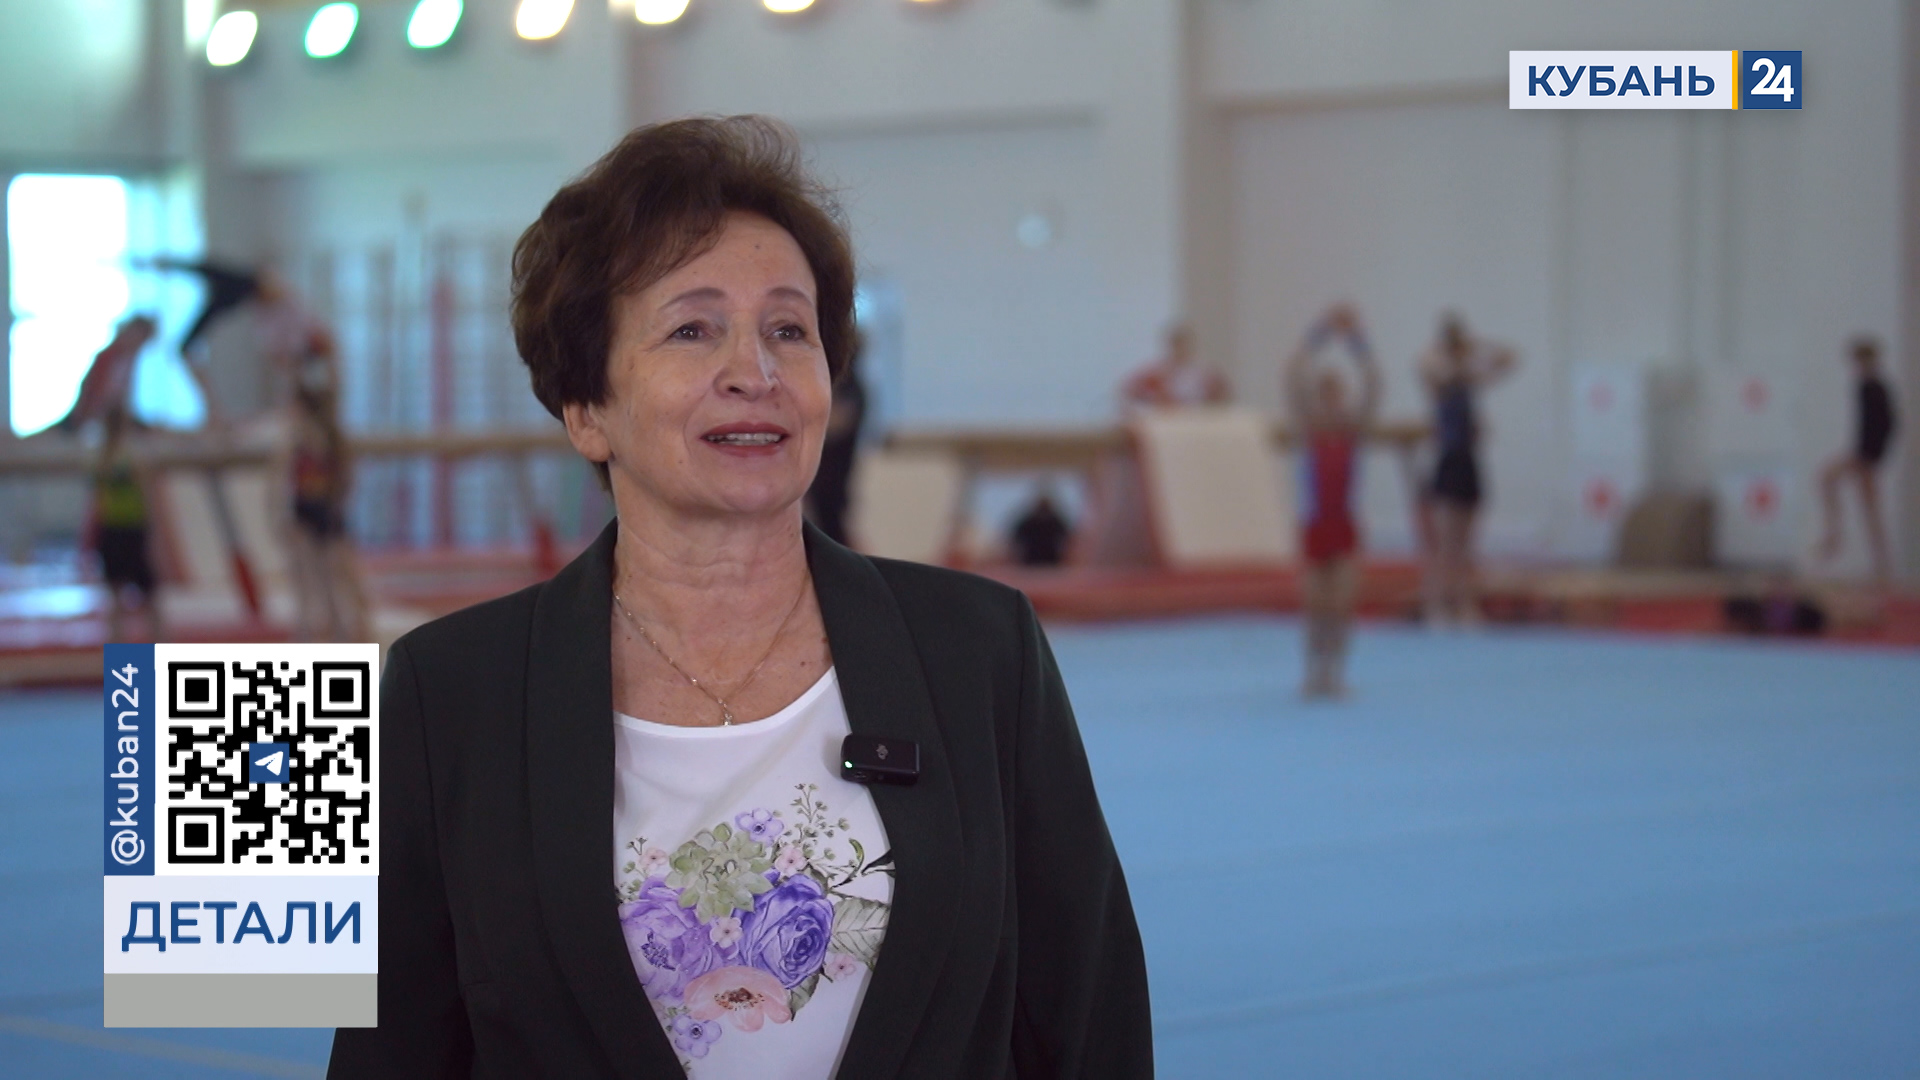 Ирина Гаврик: кубанские гимнастки уже привлекаются в составы сборных России 21.05.24